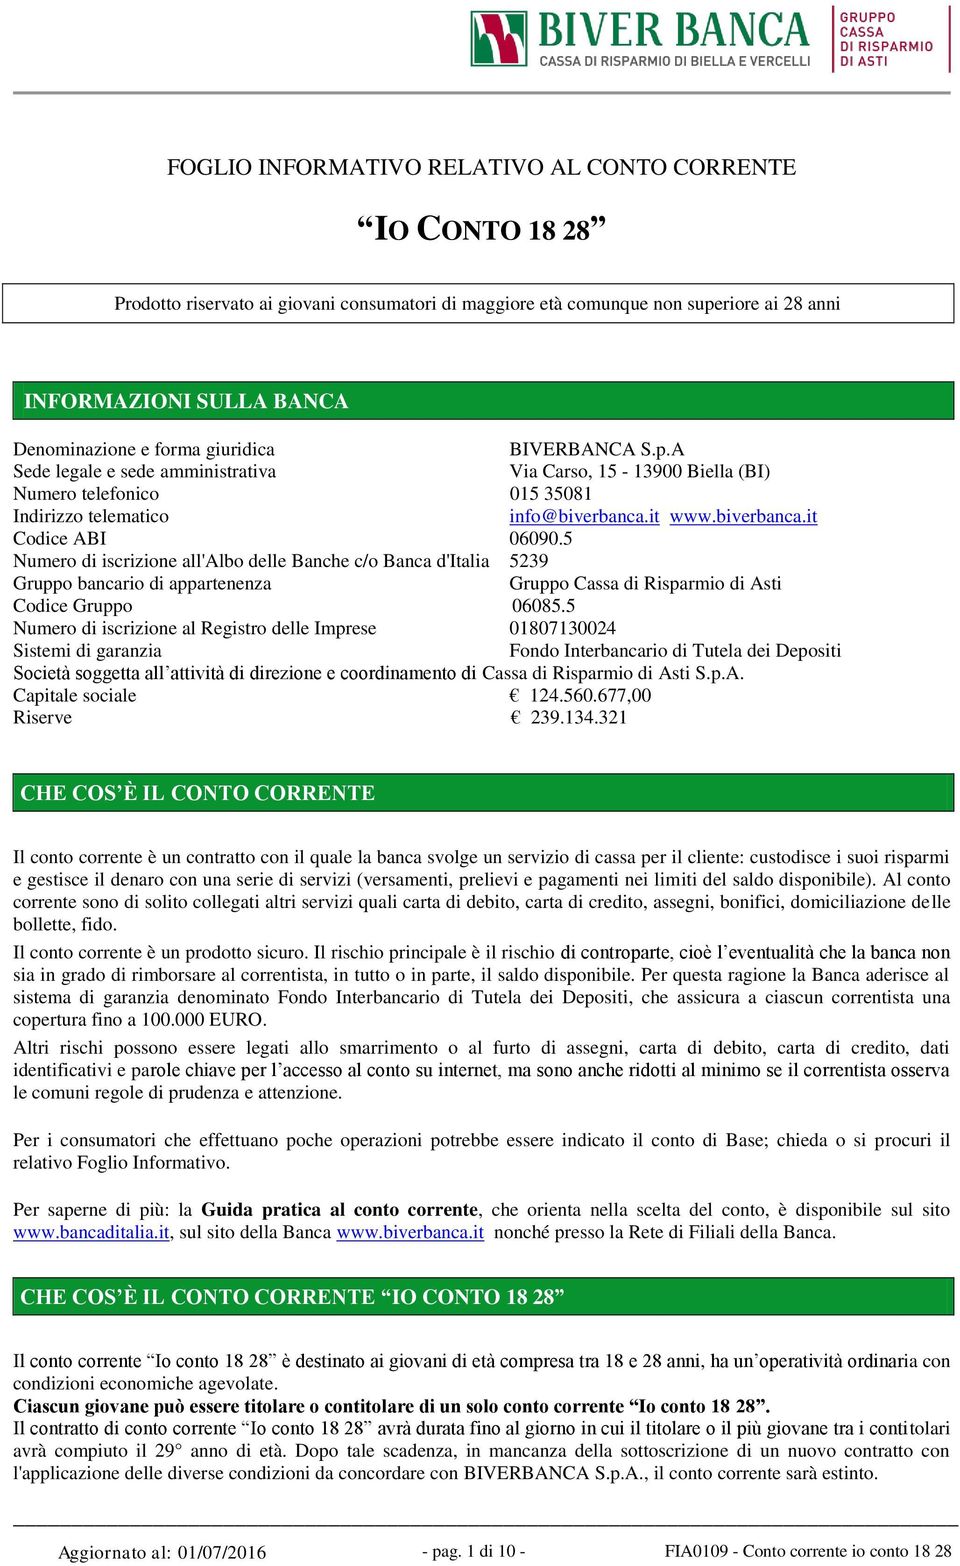 5 Numero di iscrizione all'albo delle Banche c/o Banca d'italia 5239 Gruppo bancario di appartenenza Gruppo Cassa di Risparmio di Asti Codice Gruppo 06085.